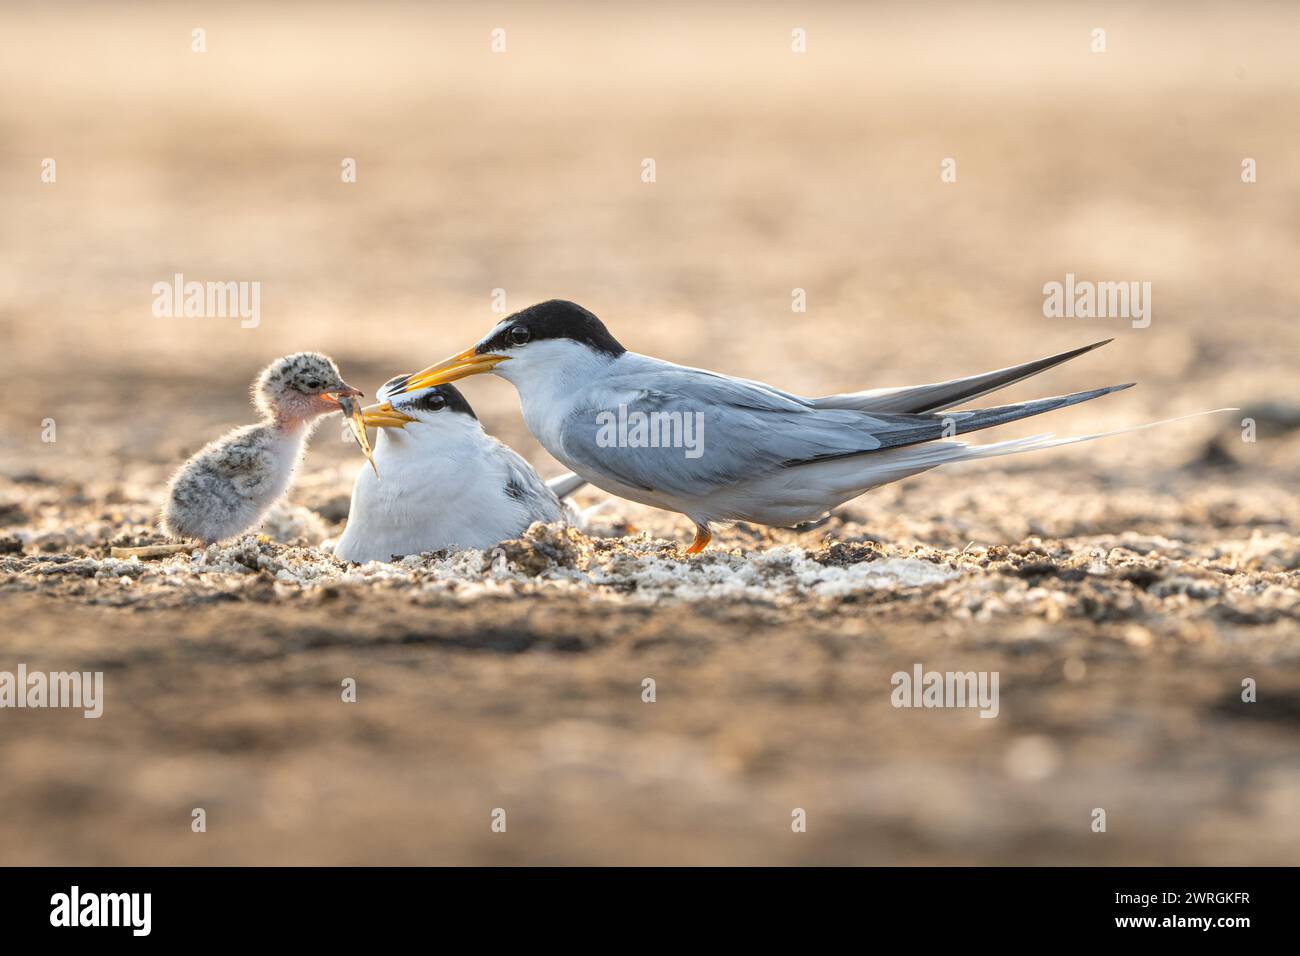 Gros plan de deux oiseaux nourrissant leur poussin, Indonésie Banque D'Images